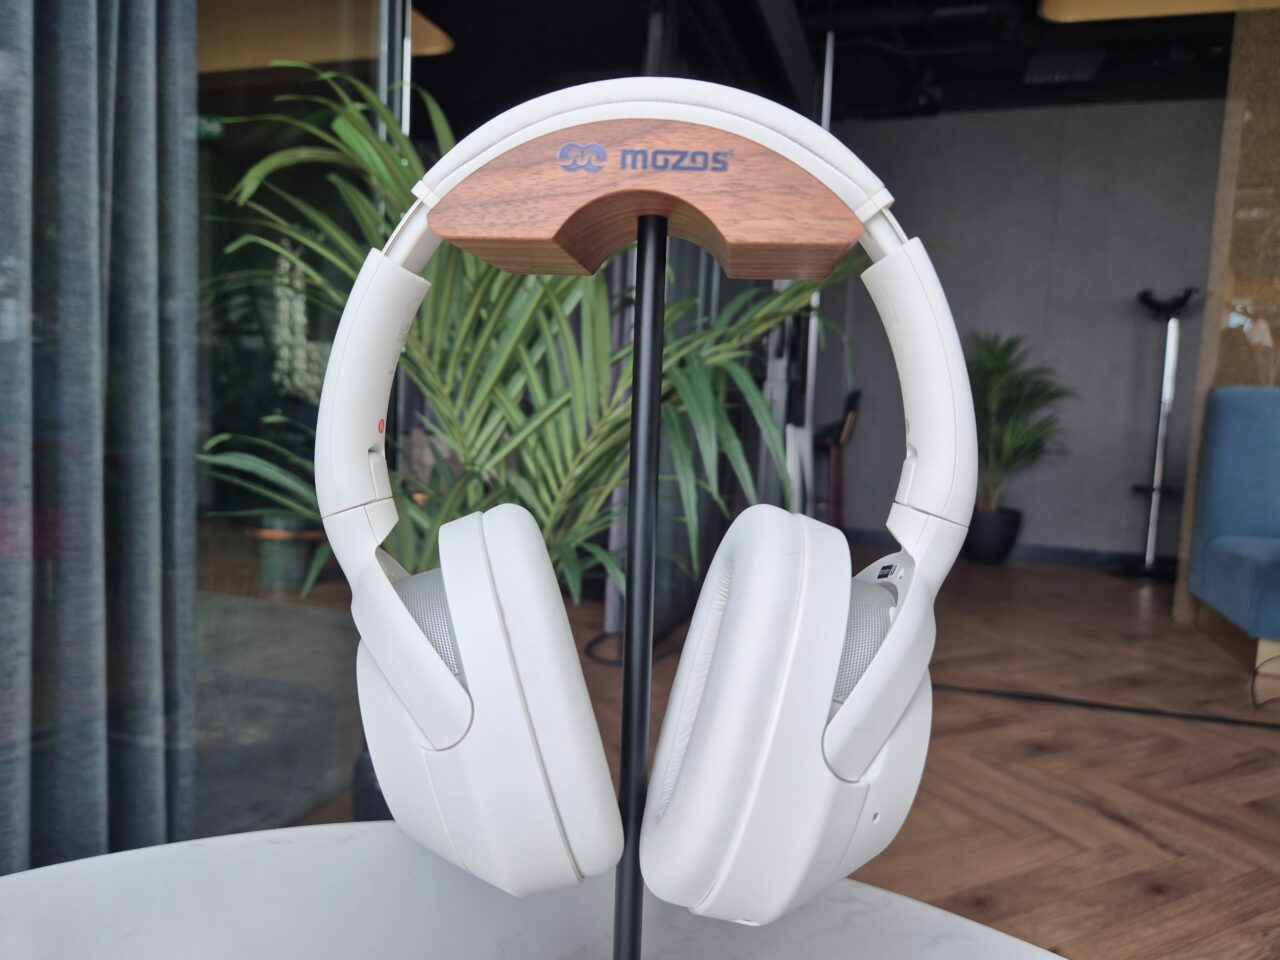 Słuchawki ULT WEAR. Nowe słuchawki bezprzewodowe Sony na stojaku